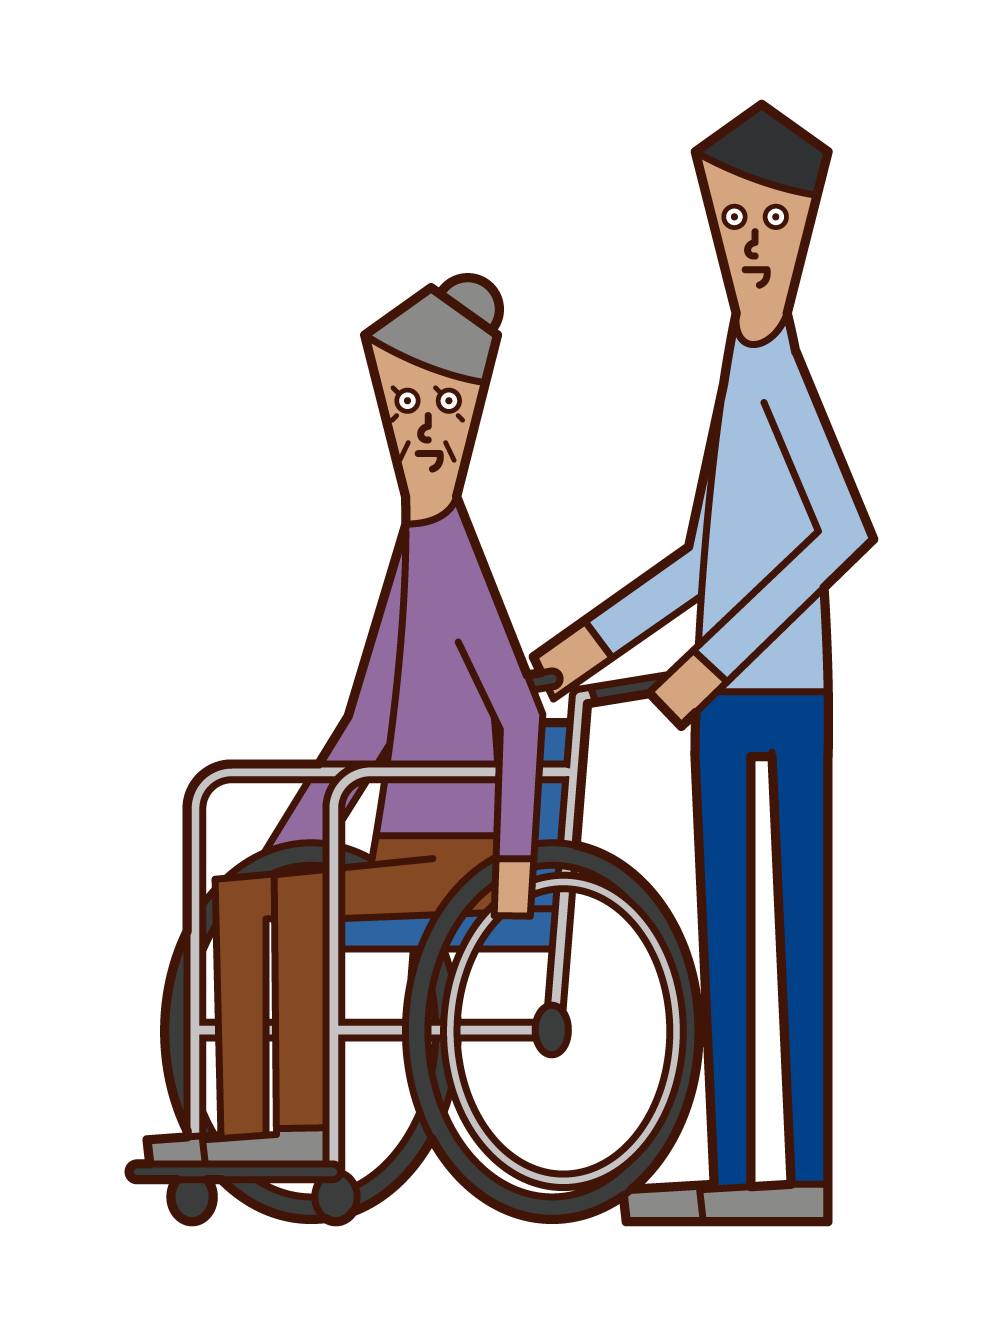 車椅子に乗る老人 女性 と押す人 男性 のイラスト フリーイラスト素材 Kukukeke ククケケ